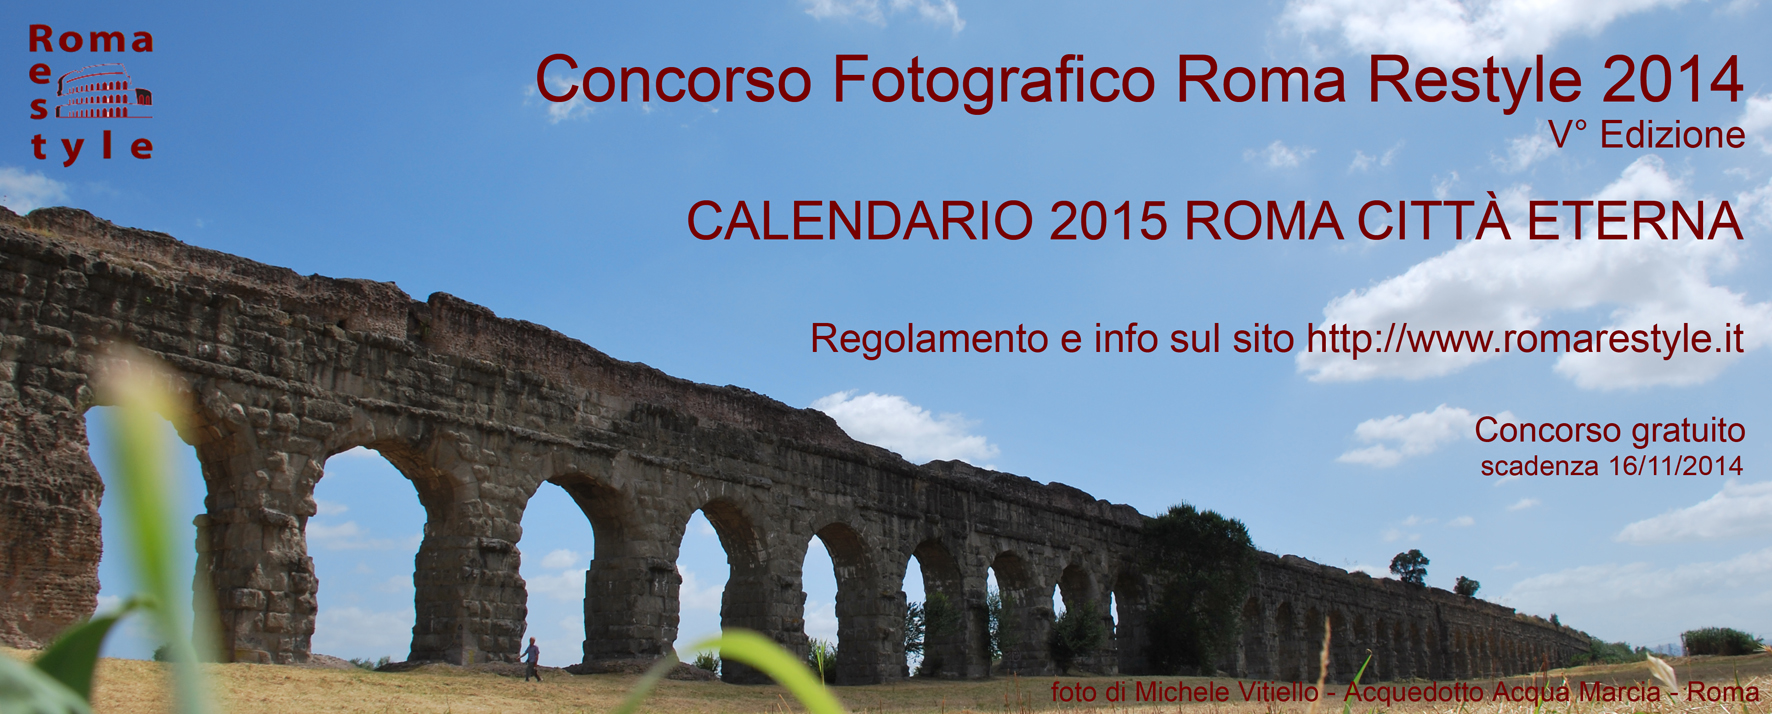 CONCORSO FOTOGRAFICO 2014 ROMA RESTYLE - V ° edizione